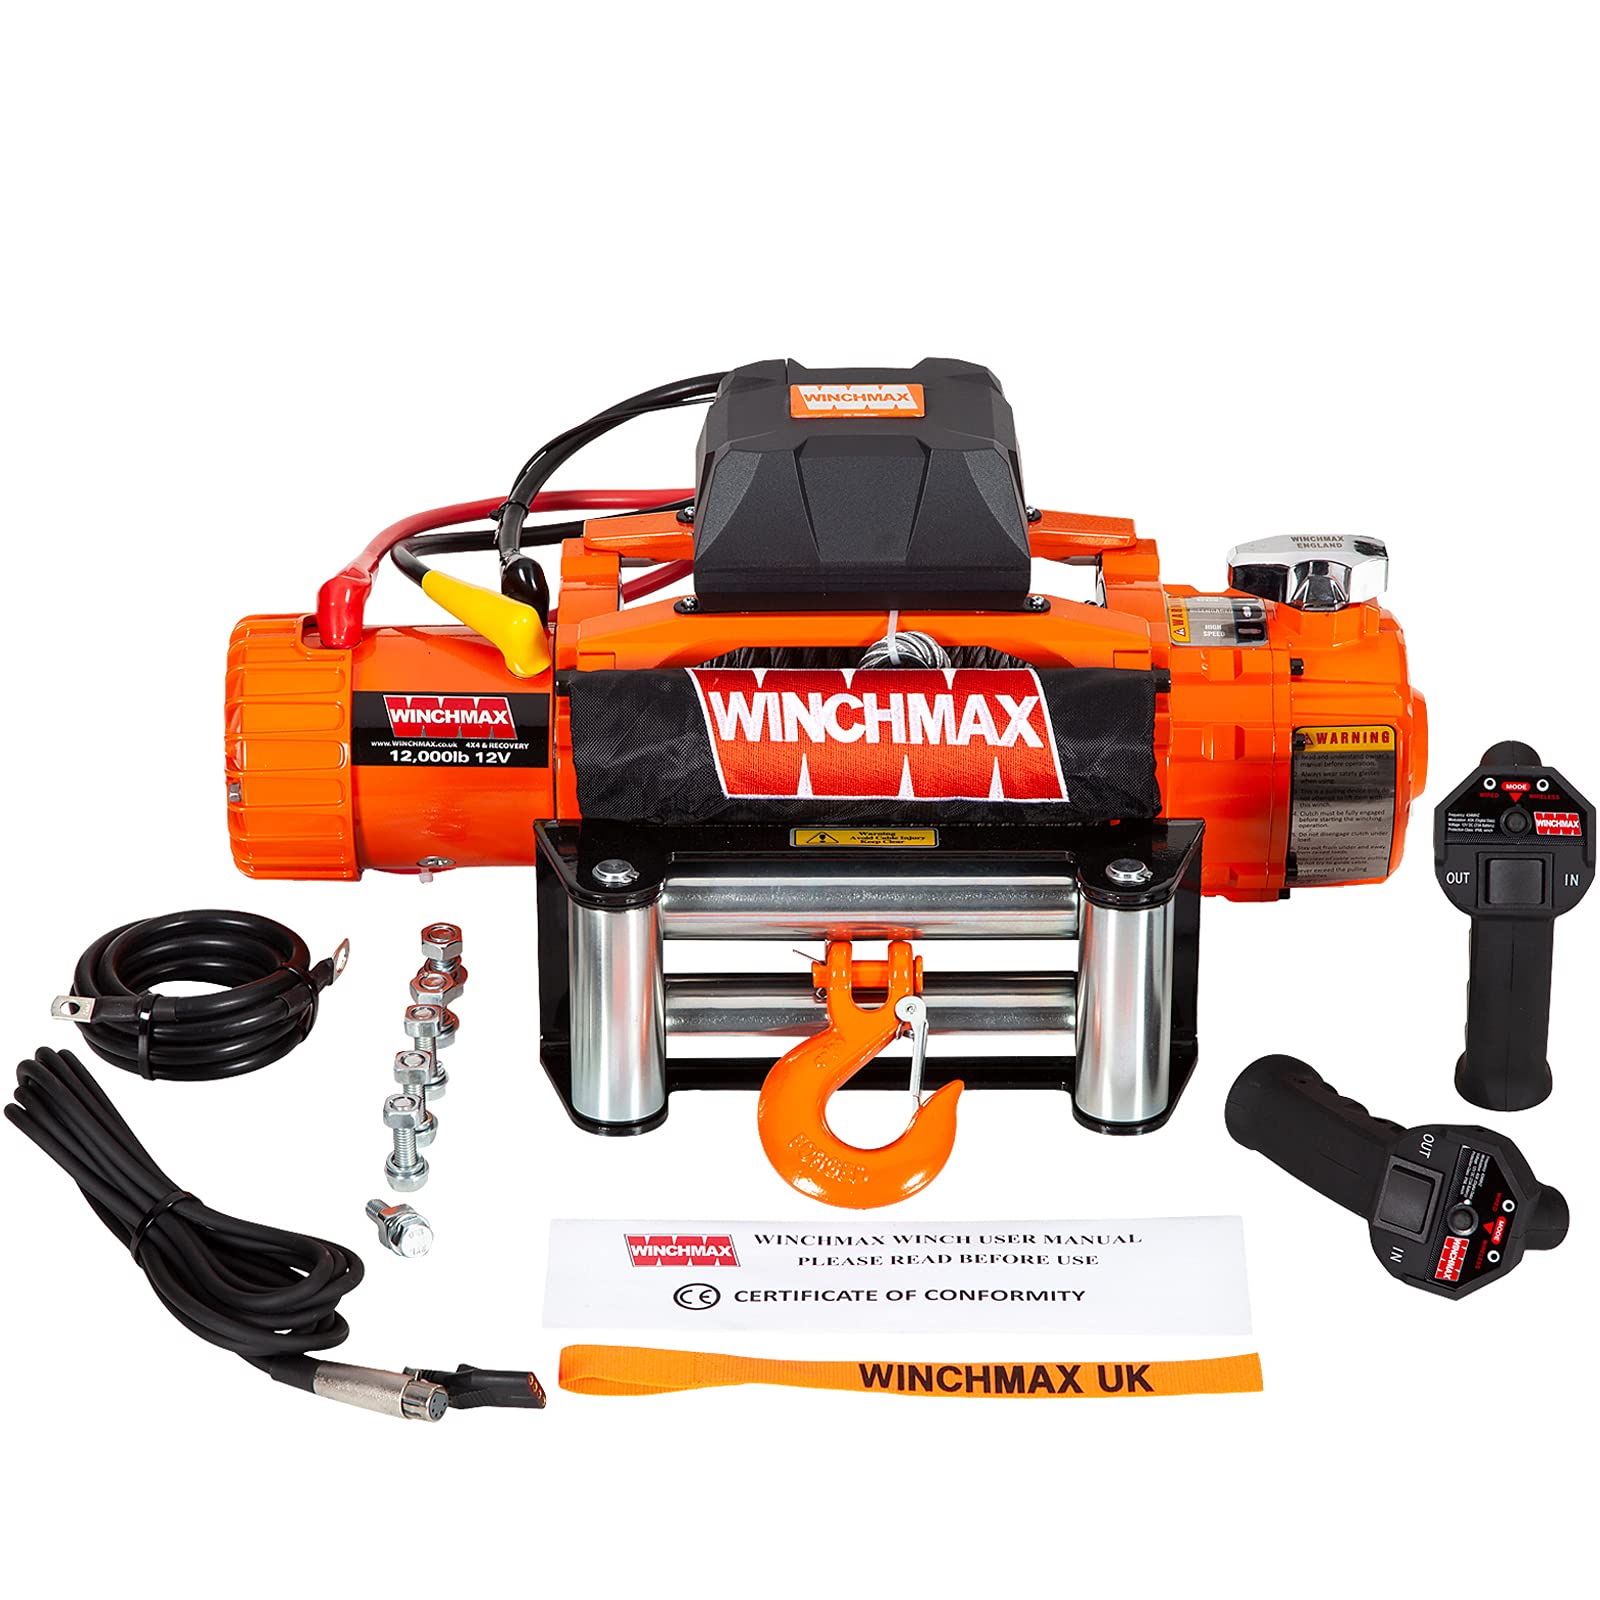 WINCHMAX 12000lb / 5443kg Original orange 12v elektrische Winde. Zwei Geschwindigkeit. 26 m x 9,5 mm verzinktes Stahldrahtseil. 3/8 Zoll Gabelkopfhaken. Drahtlose Doppelfernbedienung von Winchmax